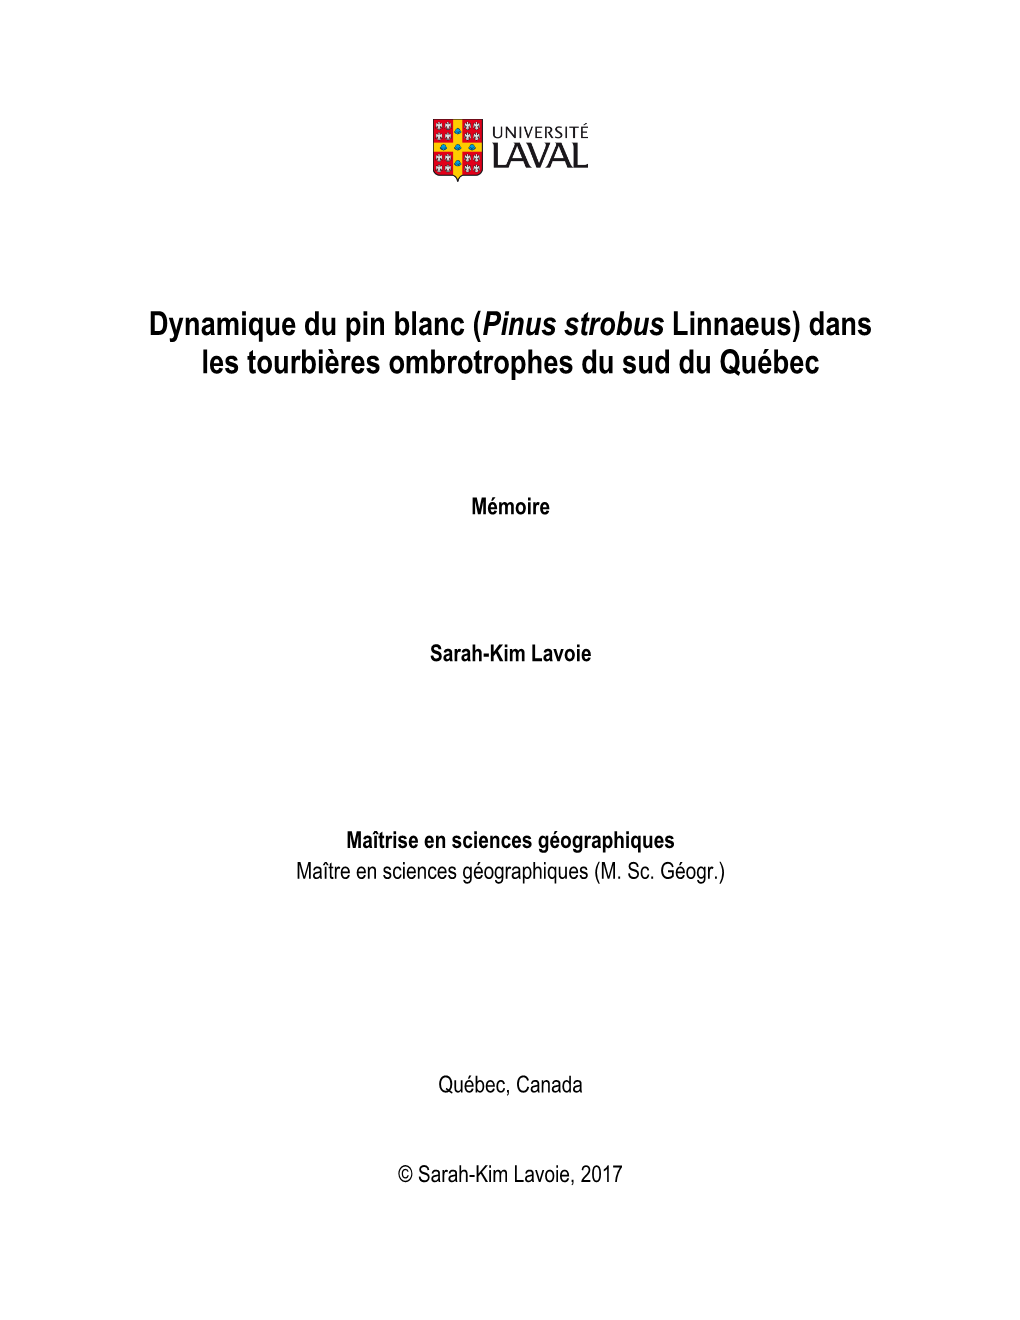 Dynamique Du Pin Blanc (Pinus Strobus Linnaeus) Dans Les Tourbières Ombrotrophes Du Sud Du Québec